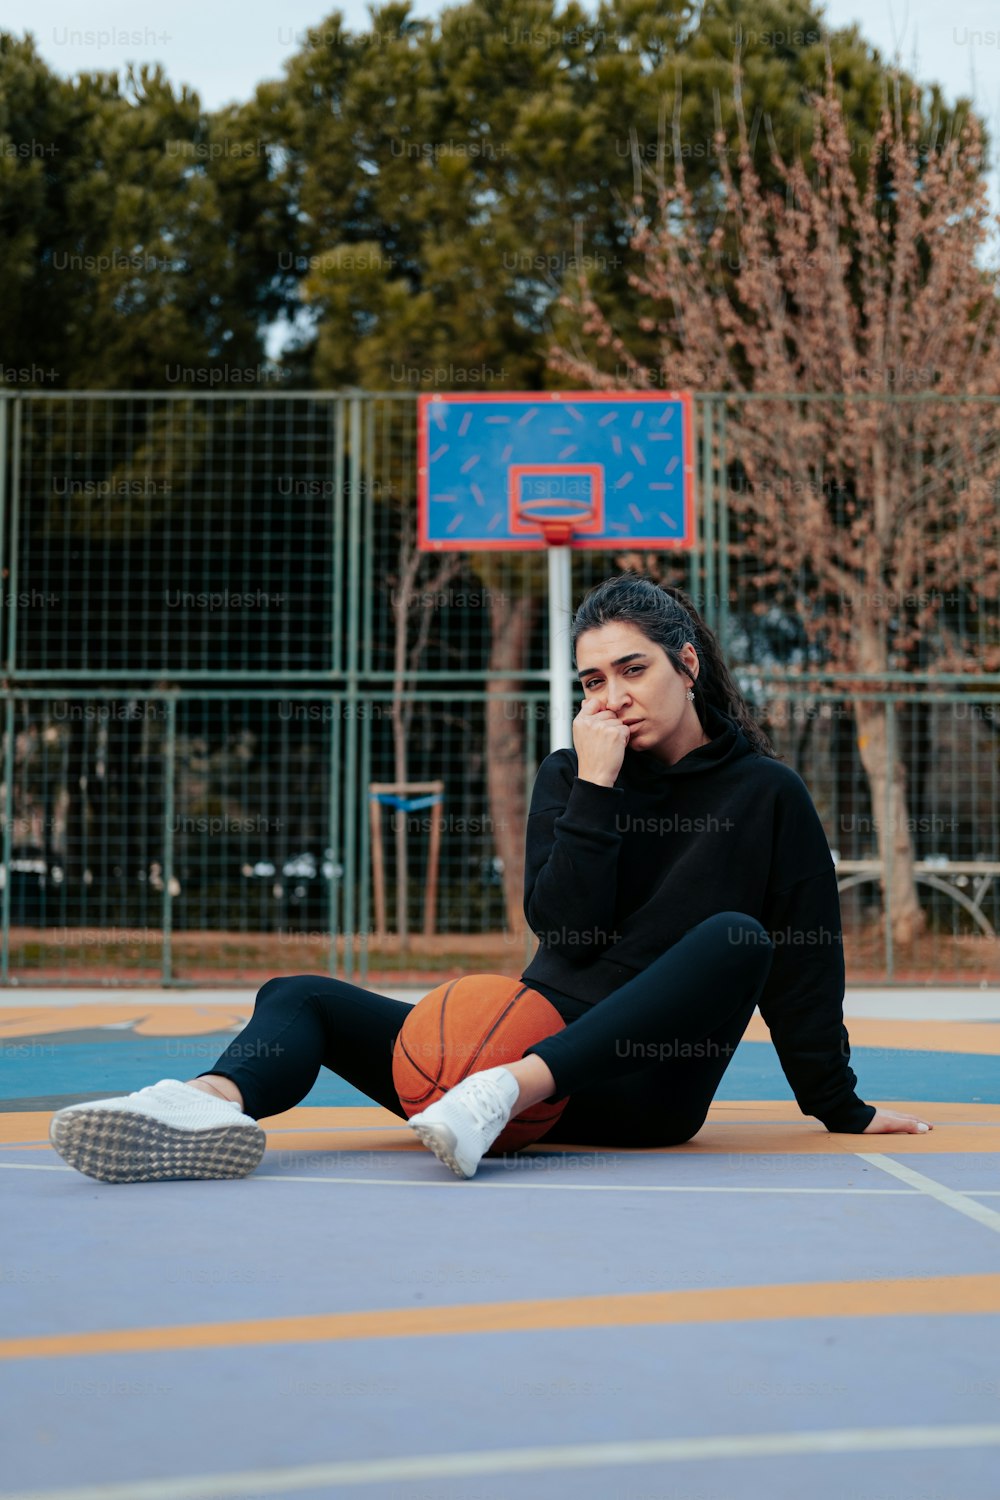 バスケットボールを手に地面に座っている女性